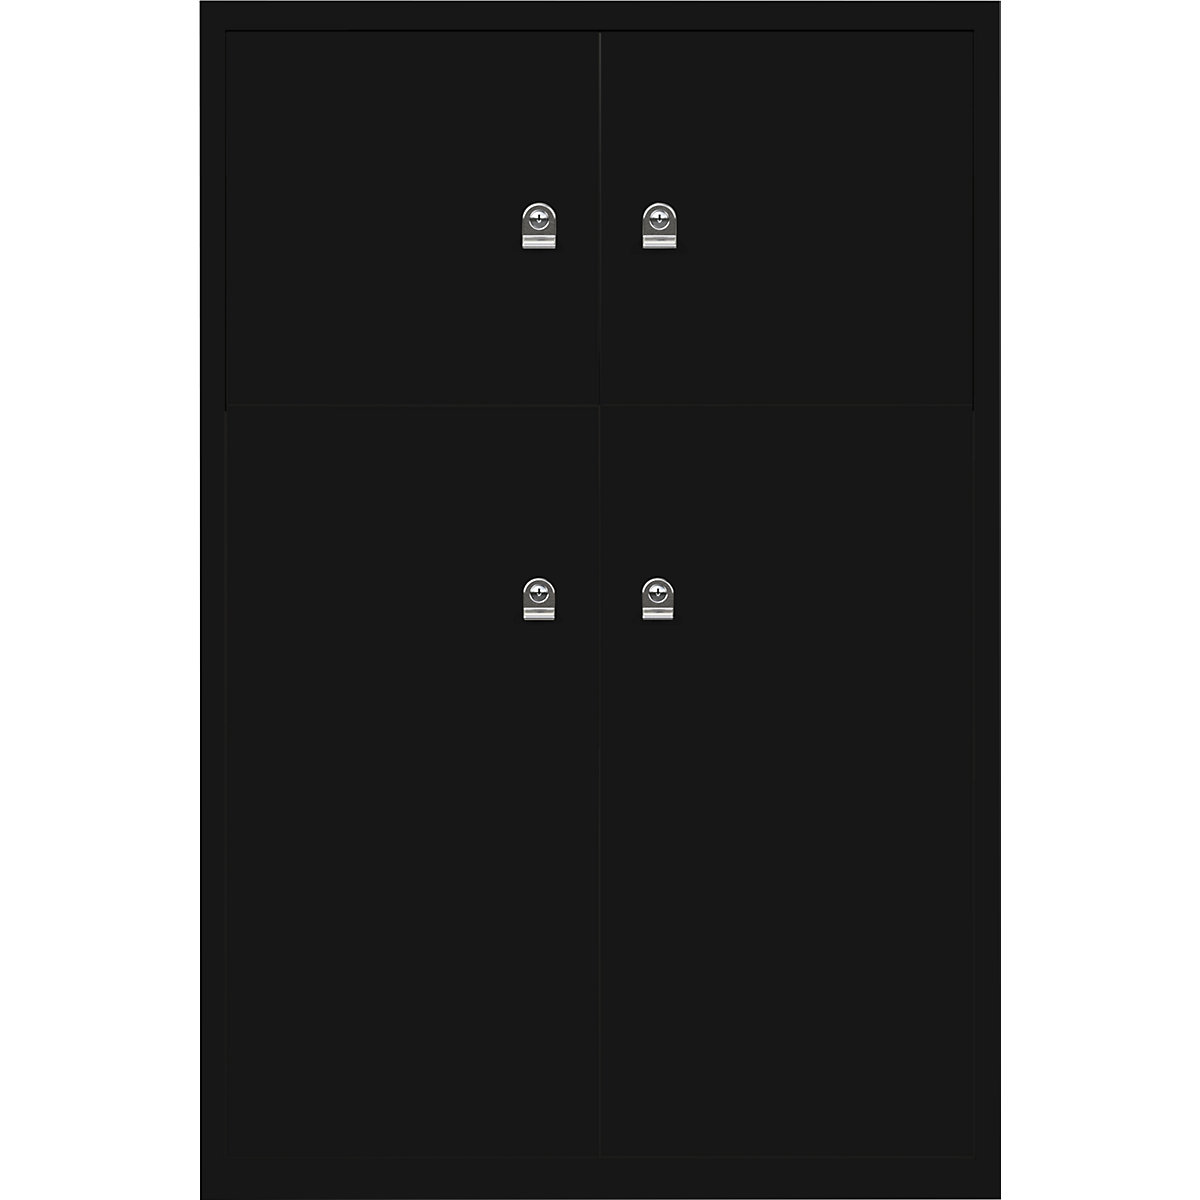 Omara s predelki z zaklepanjem LateralFile™ – BISLEY, 4 predelki z zaklepanjem, višina 2 x 375 mm, 2 x 755 mm, črne barve-18